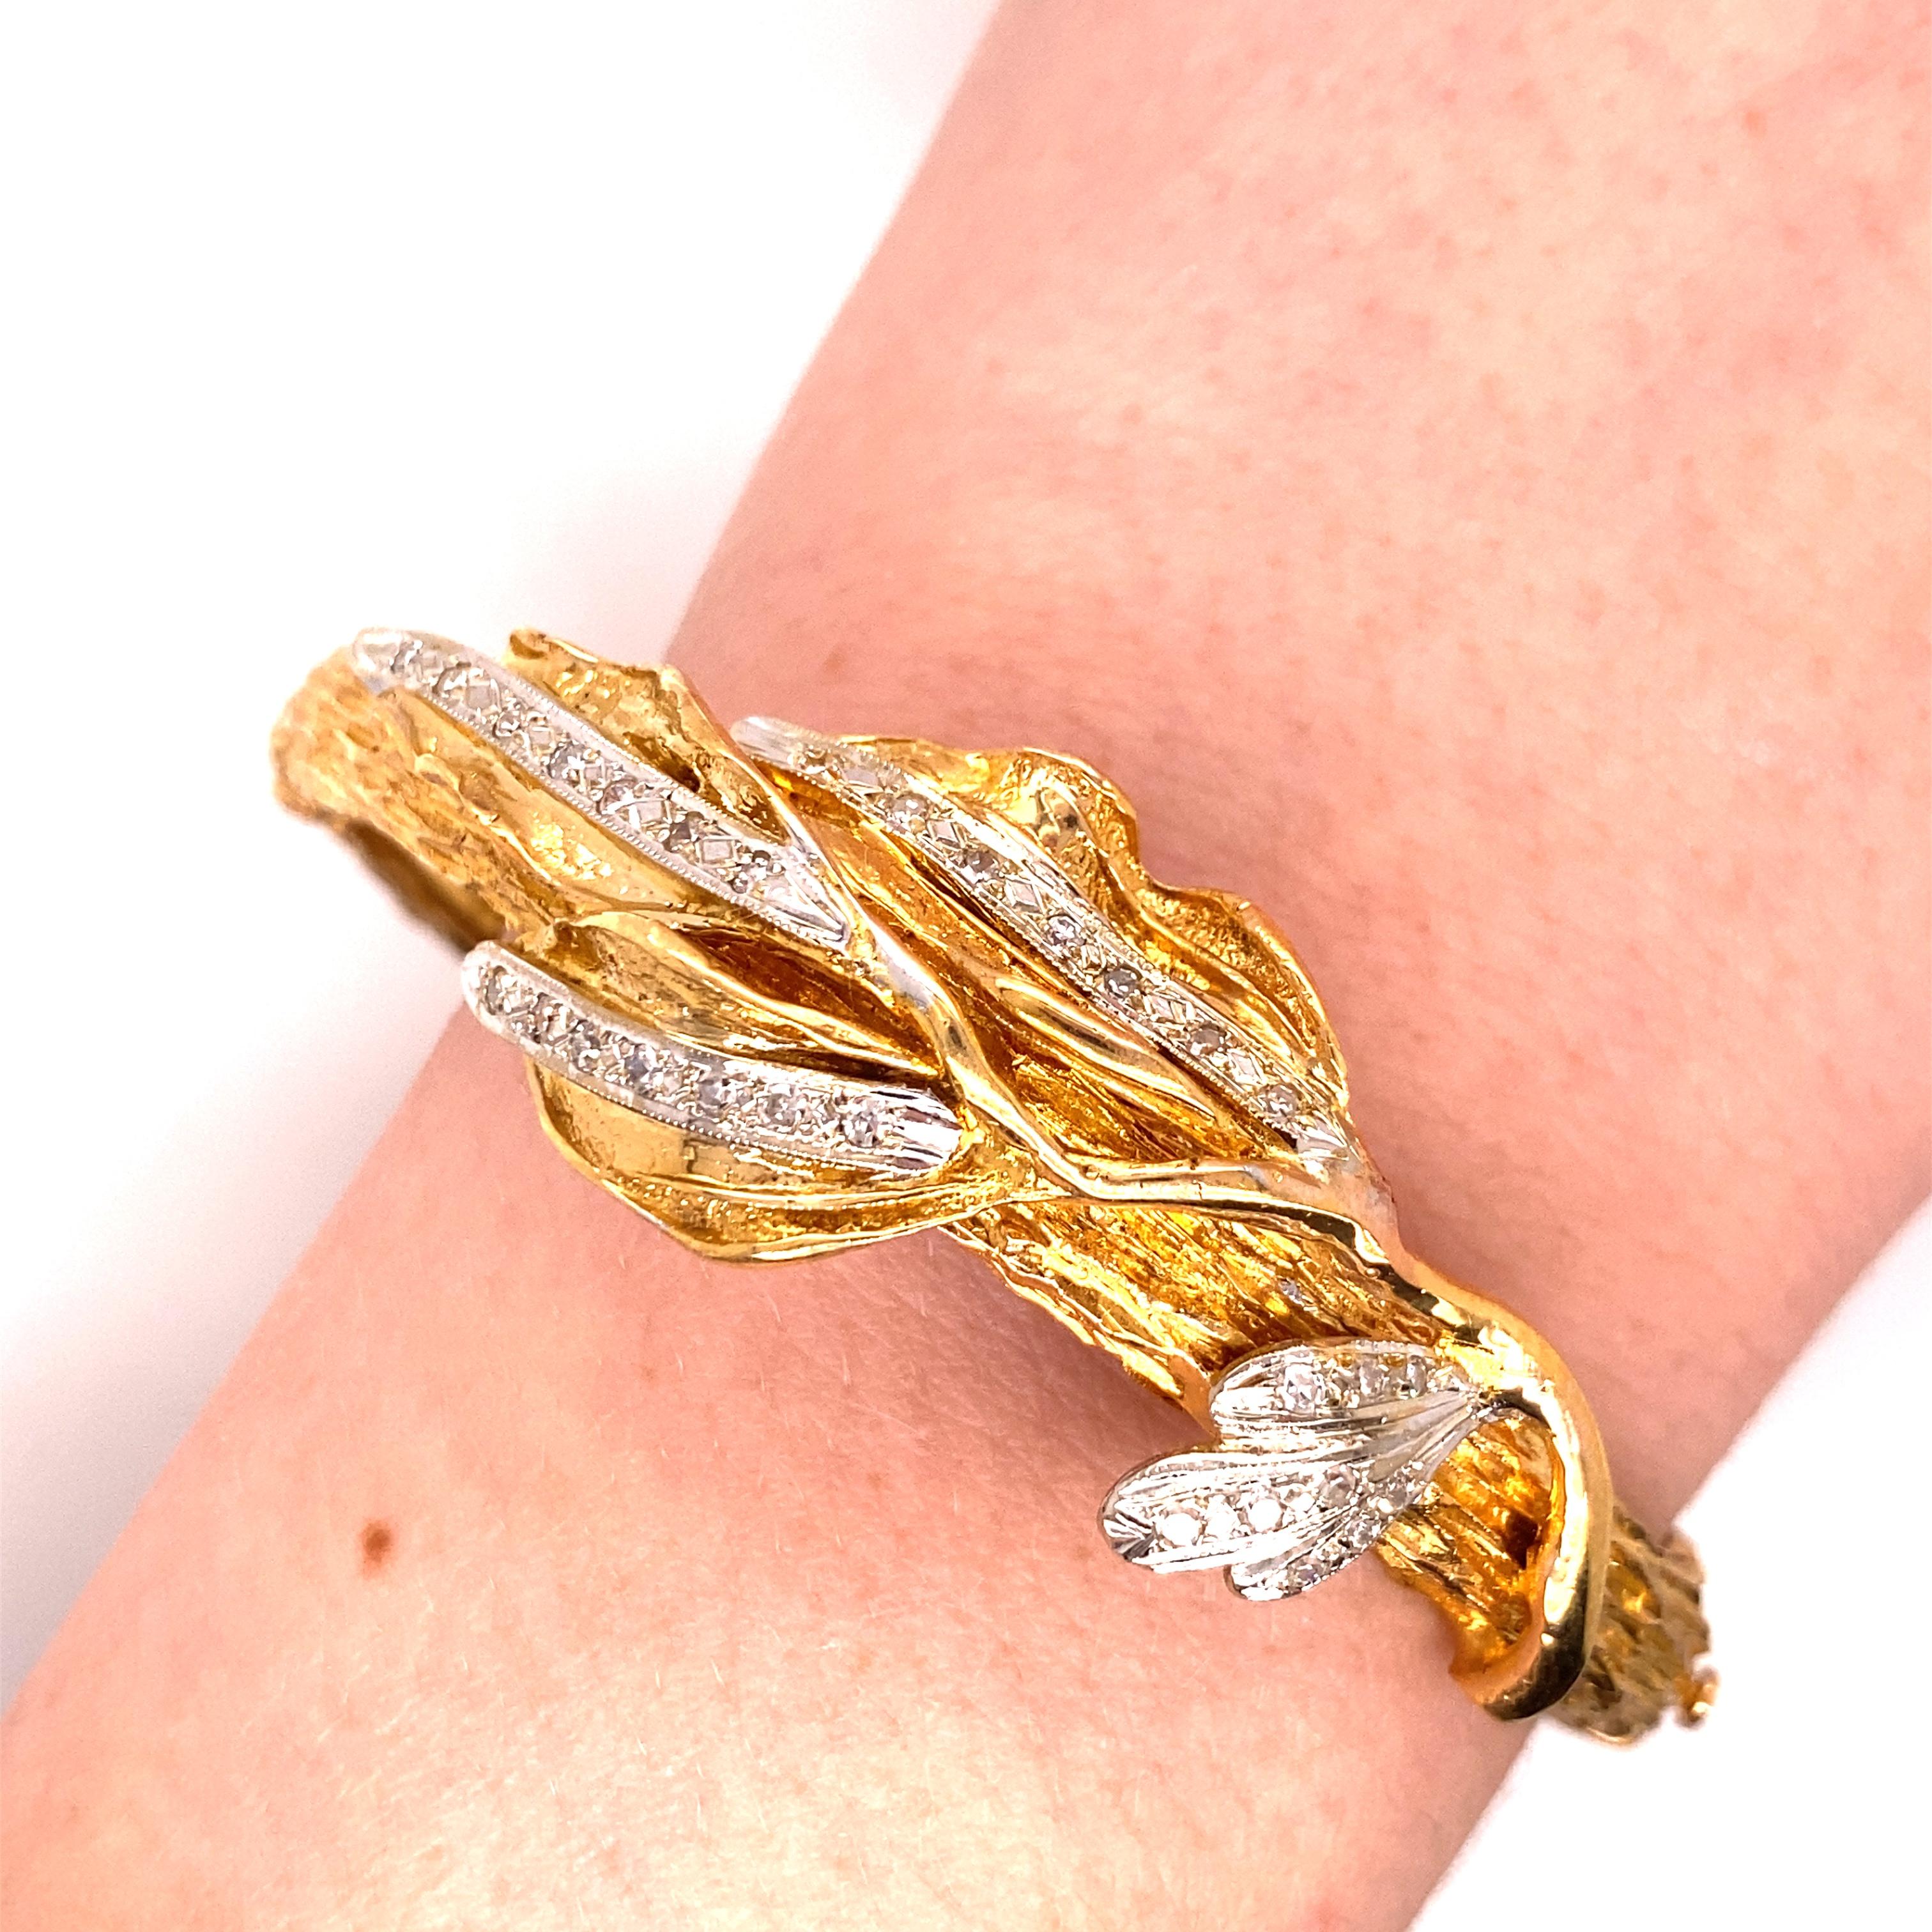 Bracelet vintage en or jaune 18K à feuilles de diamants - 30 diamants taillés à l'unité sont sertis en or blanc dans les feuilles, pour un poids total approximatif de 0,50ct, de couleur H - I et de pureté VS - SI. Le bracelet est fait de pièces